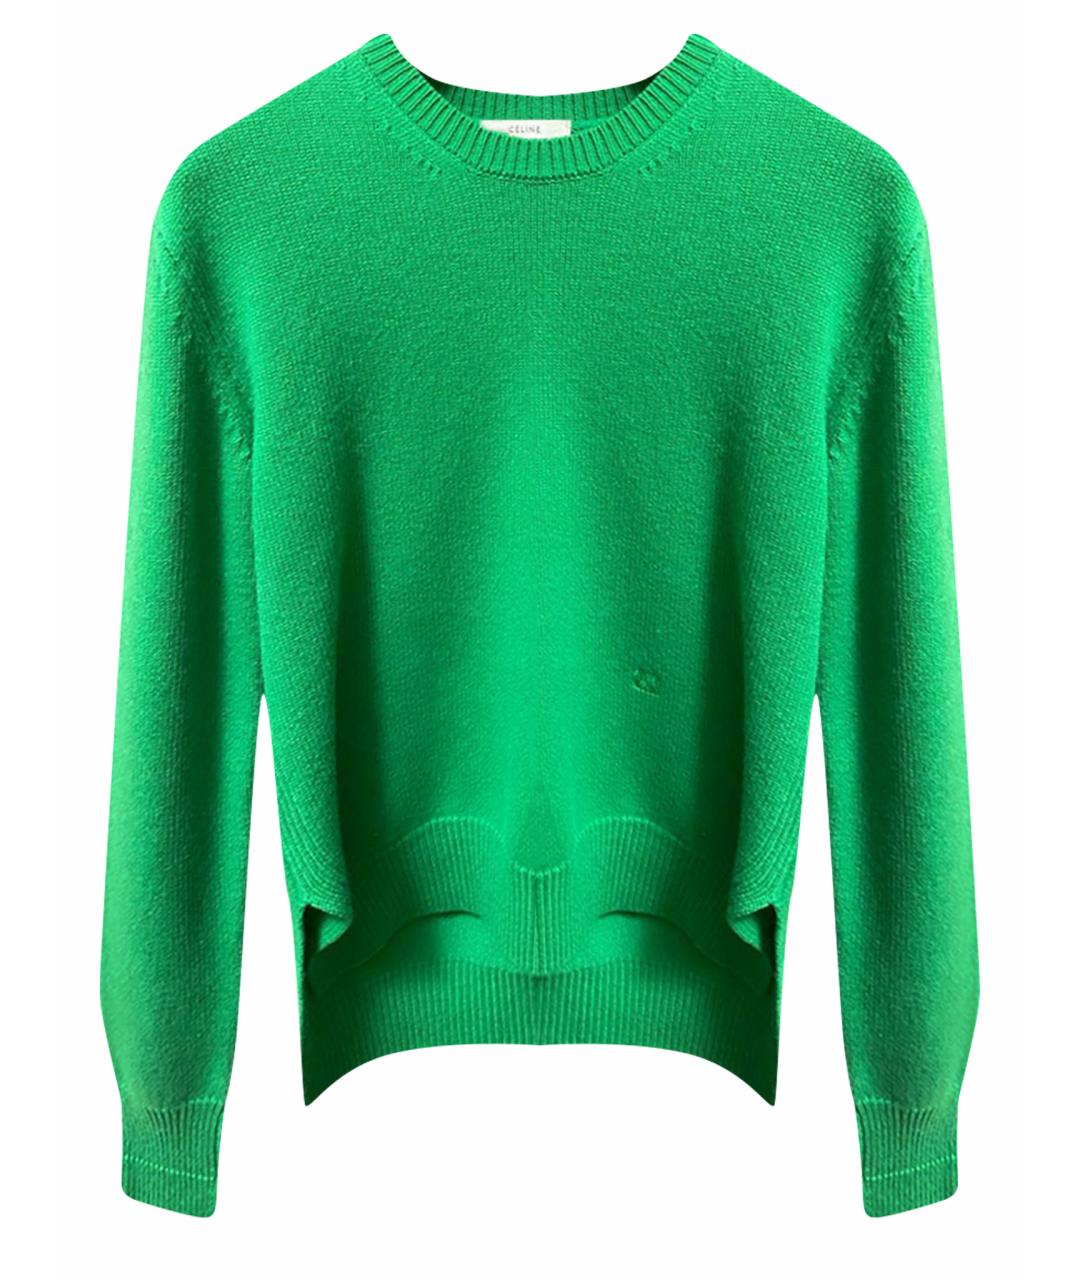 CELINE PRE-OWNED Зеленый кашемировый джемпер / свитер, фото 1